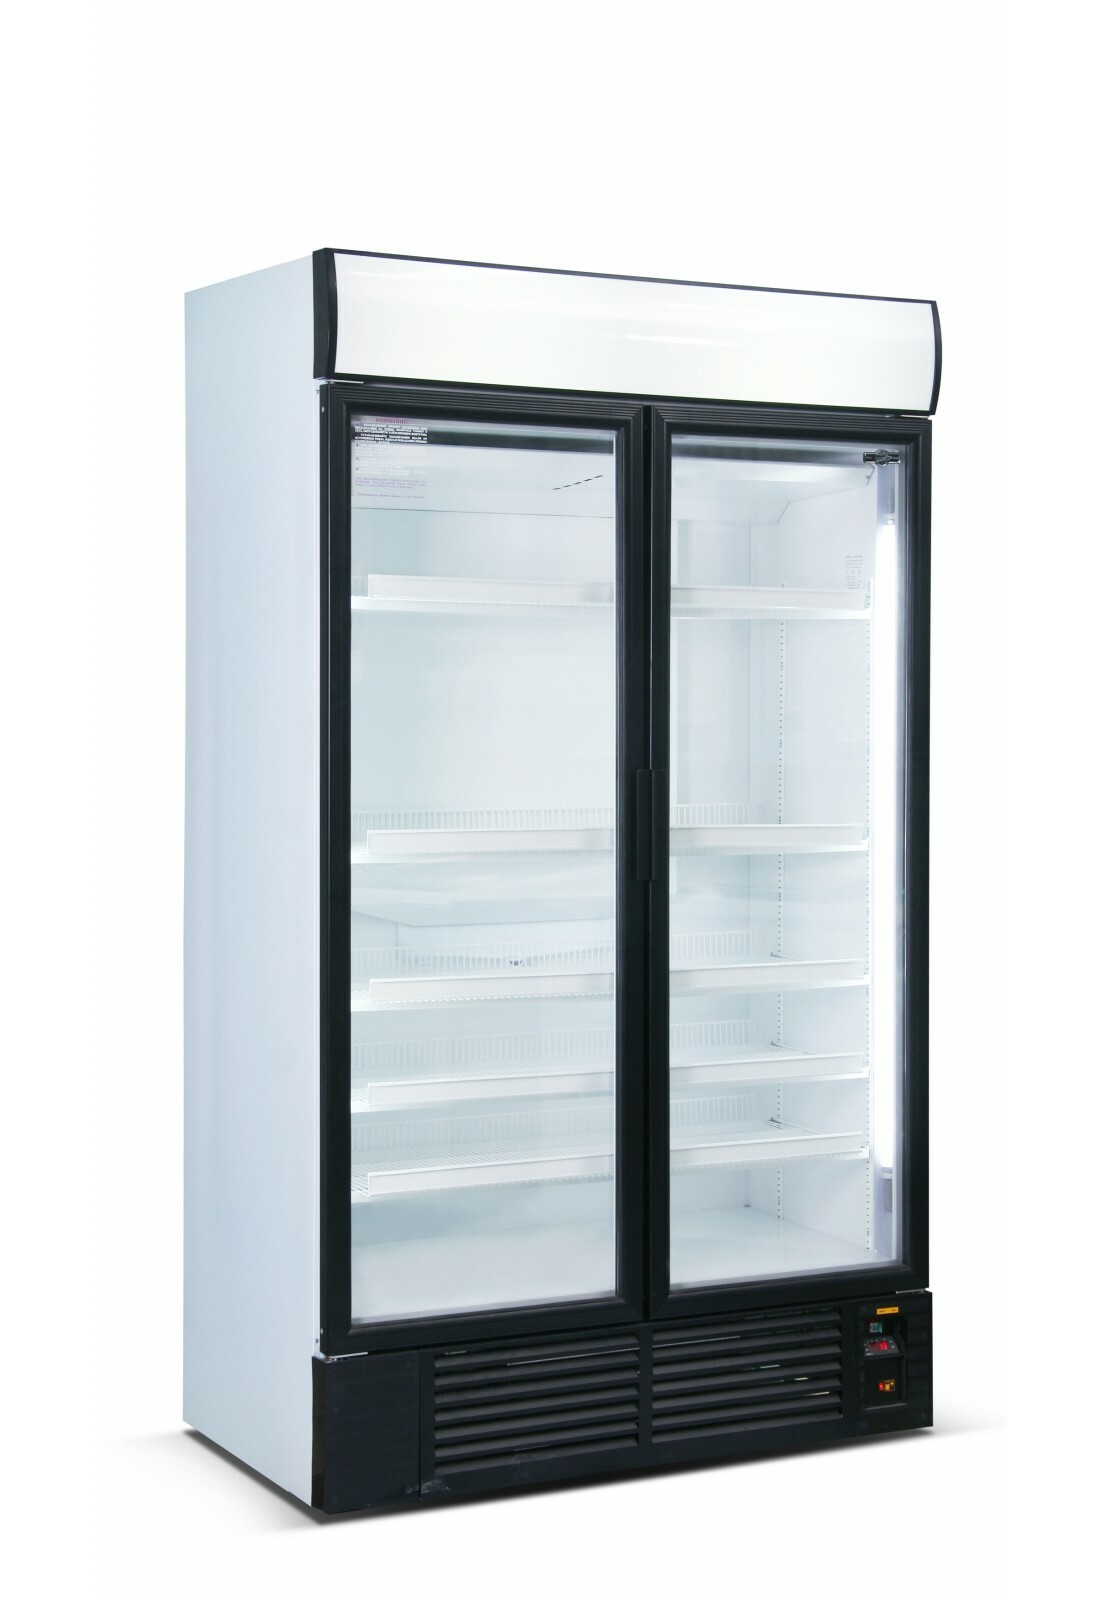 шх 0 56 шкаф холодильный